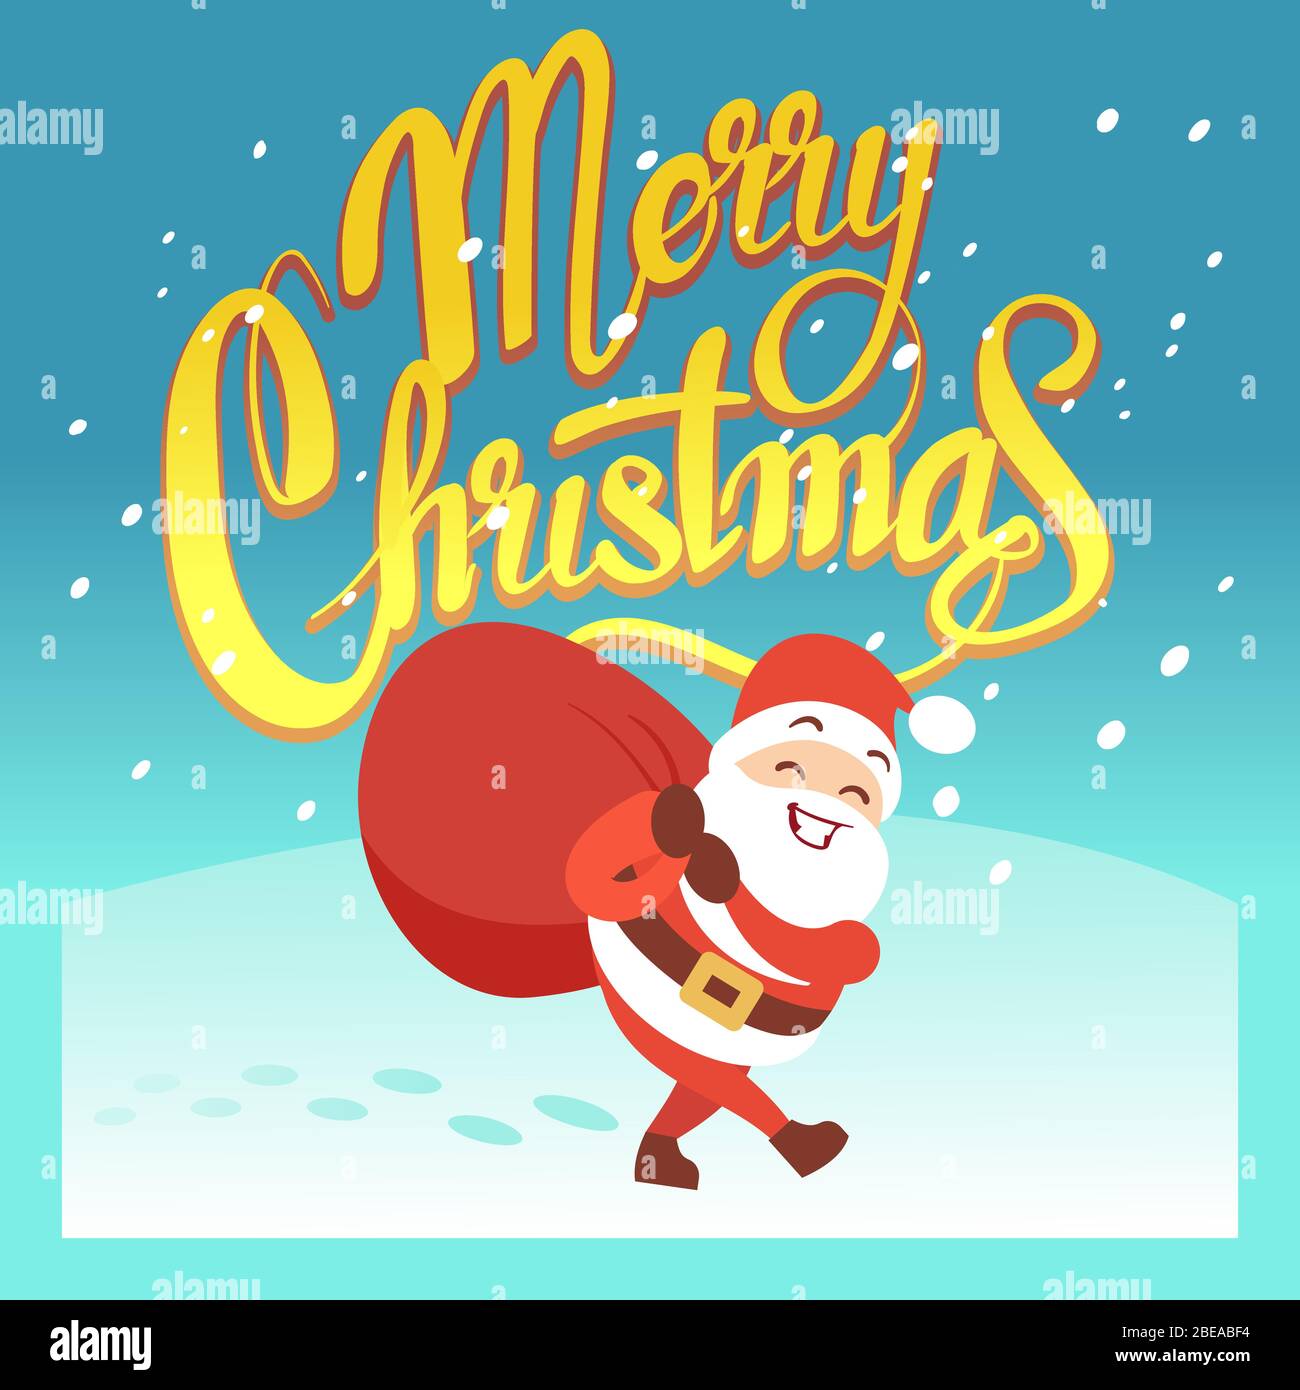 Frohe Weihnachten Vektor Grußkarte oder Party Einladung mit lustigen Weihnachtsmann und Weihnachtsgeschenke. Cartoon weihnachtsmann auf Weihnachtskarte Illustration Stock Vektor